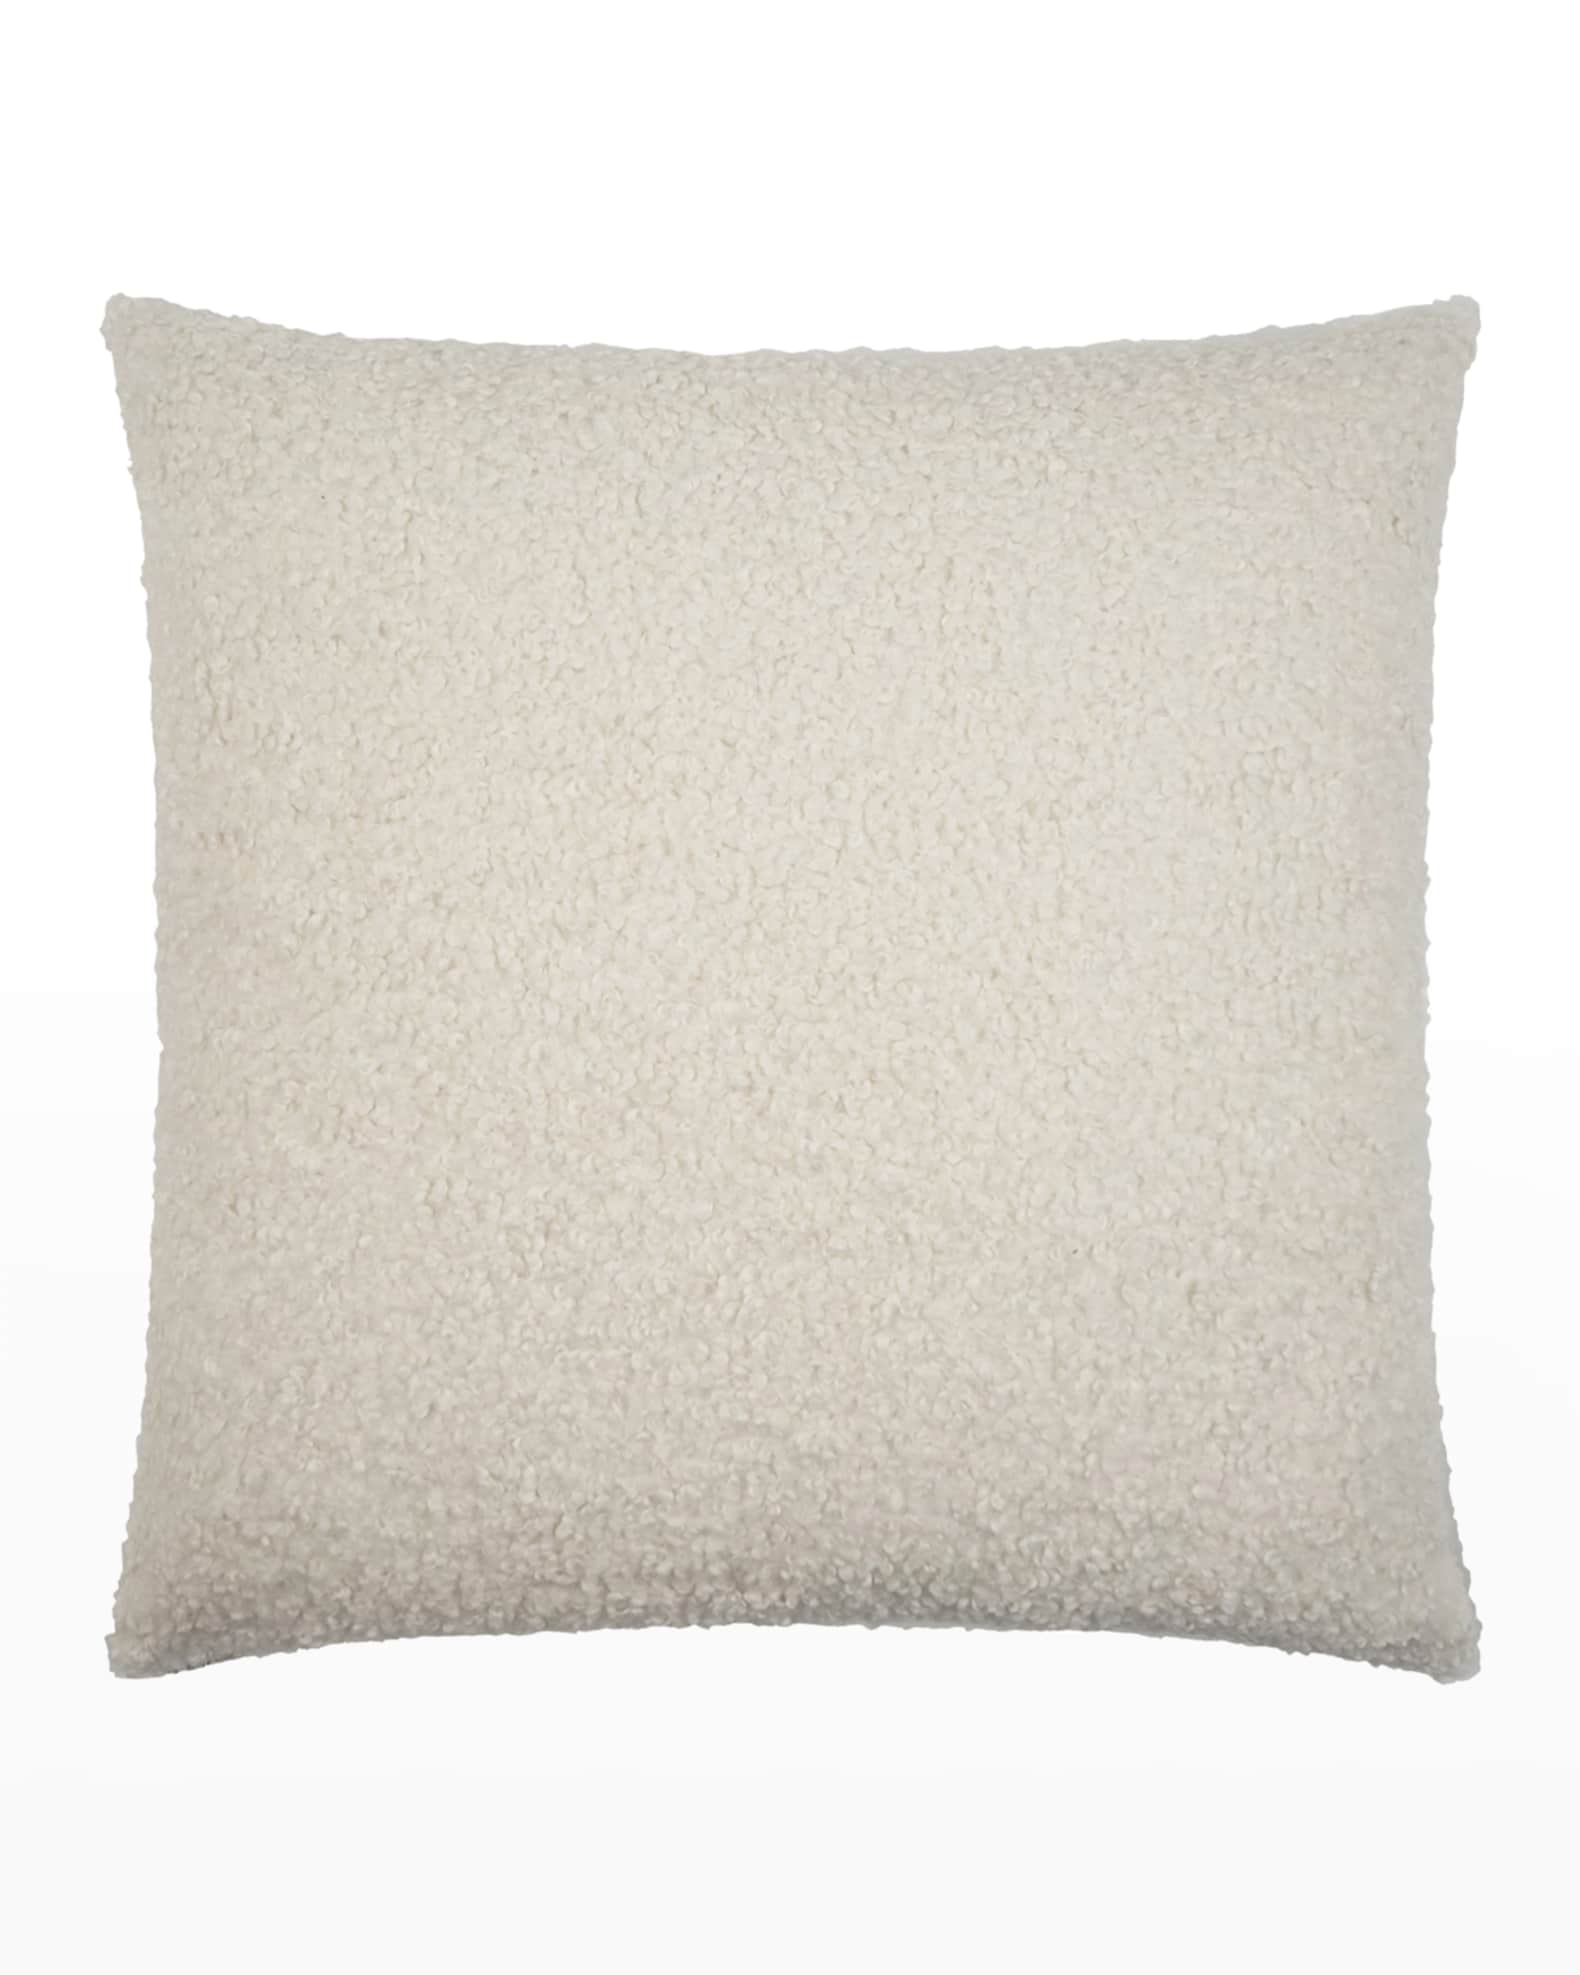 D.V. KAP Home Poodle Decorative Pillow, 24